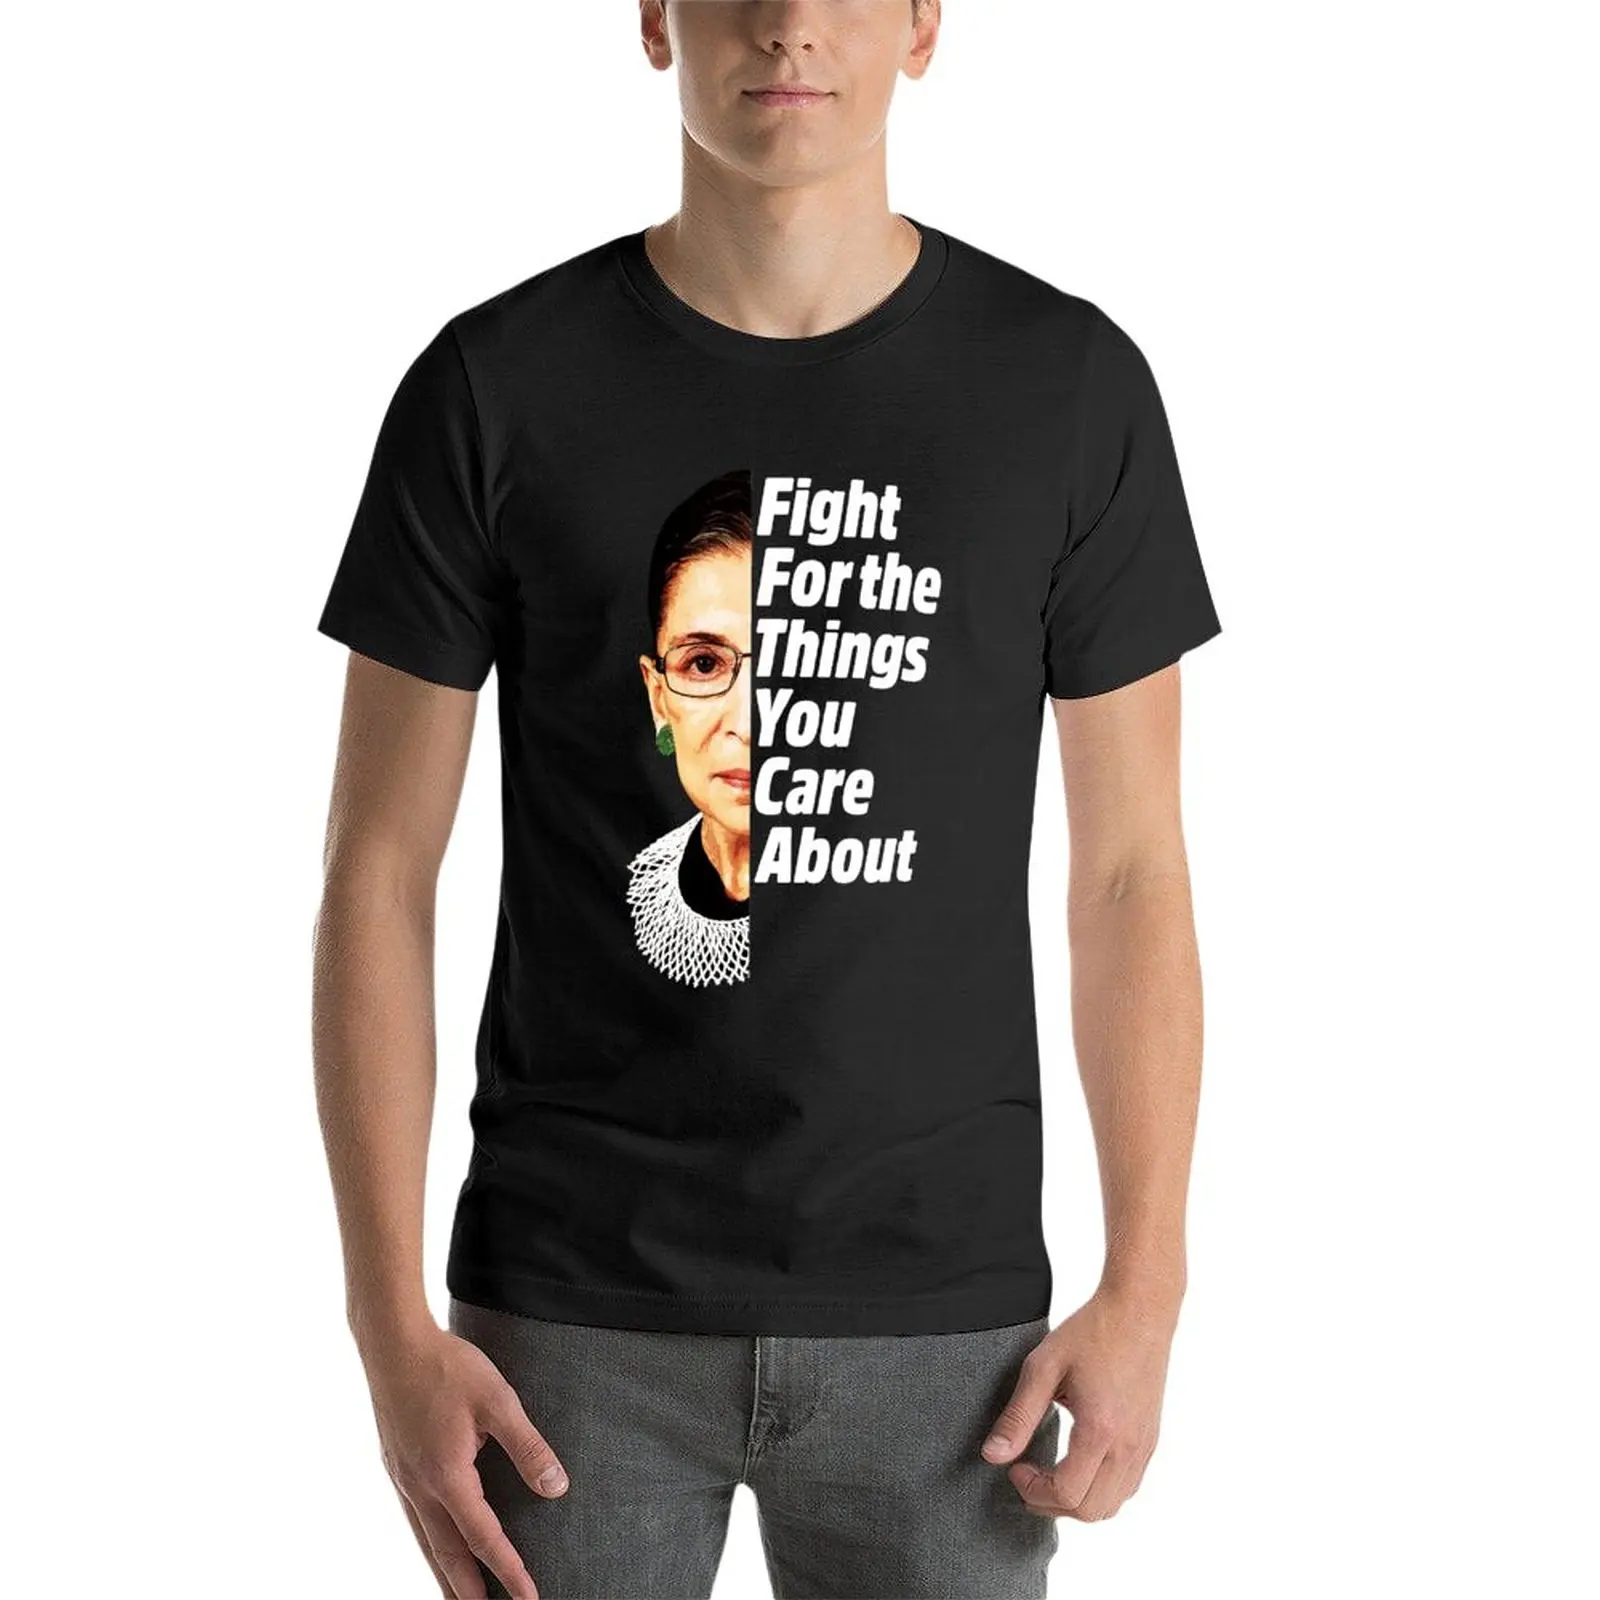 Новая футболка RBG Ruth Bader Ginsburg Fight For The Things You Care About, футболки больших размеров, забавные футболки для мужчин 2